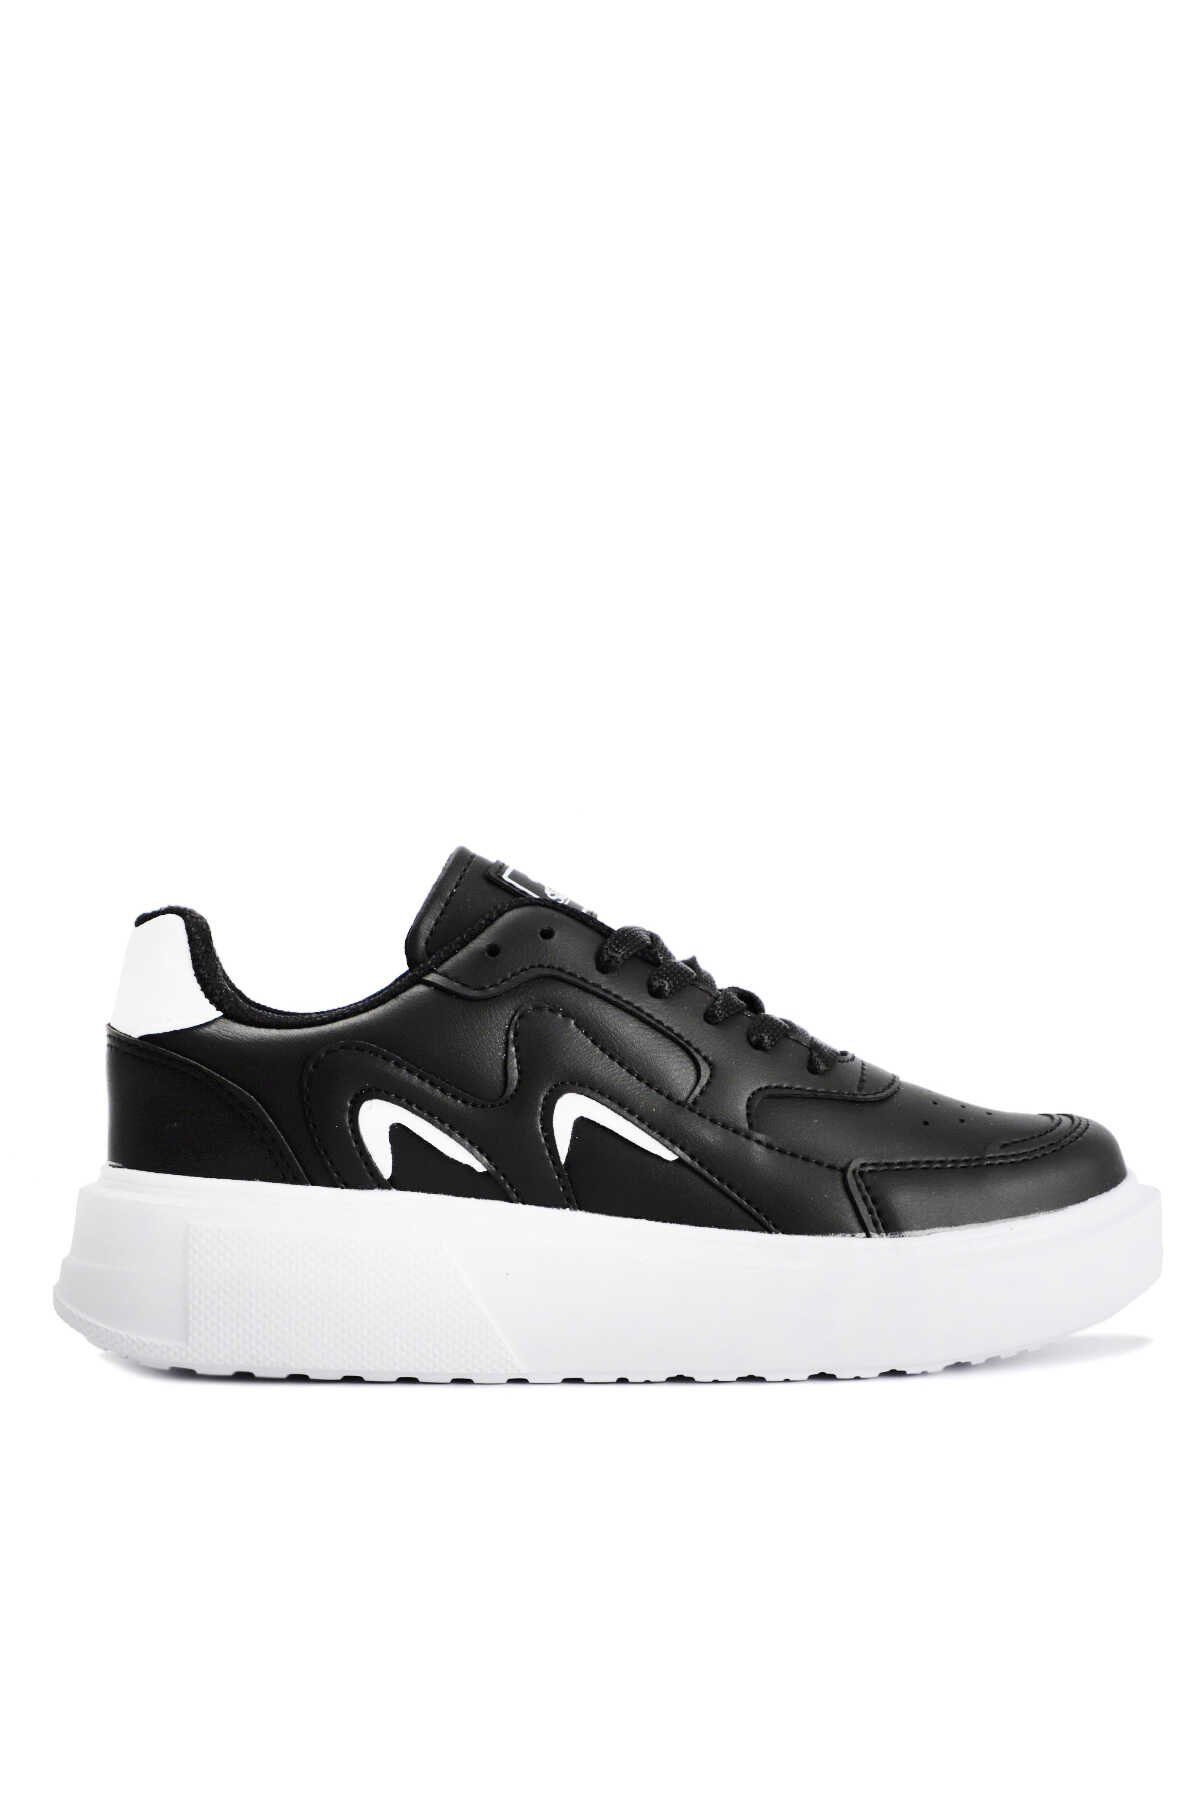 Slazenger - Slazenger ZENIA Sneaker Kadın Ayakkabı Siyah / Beyaz